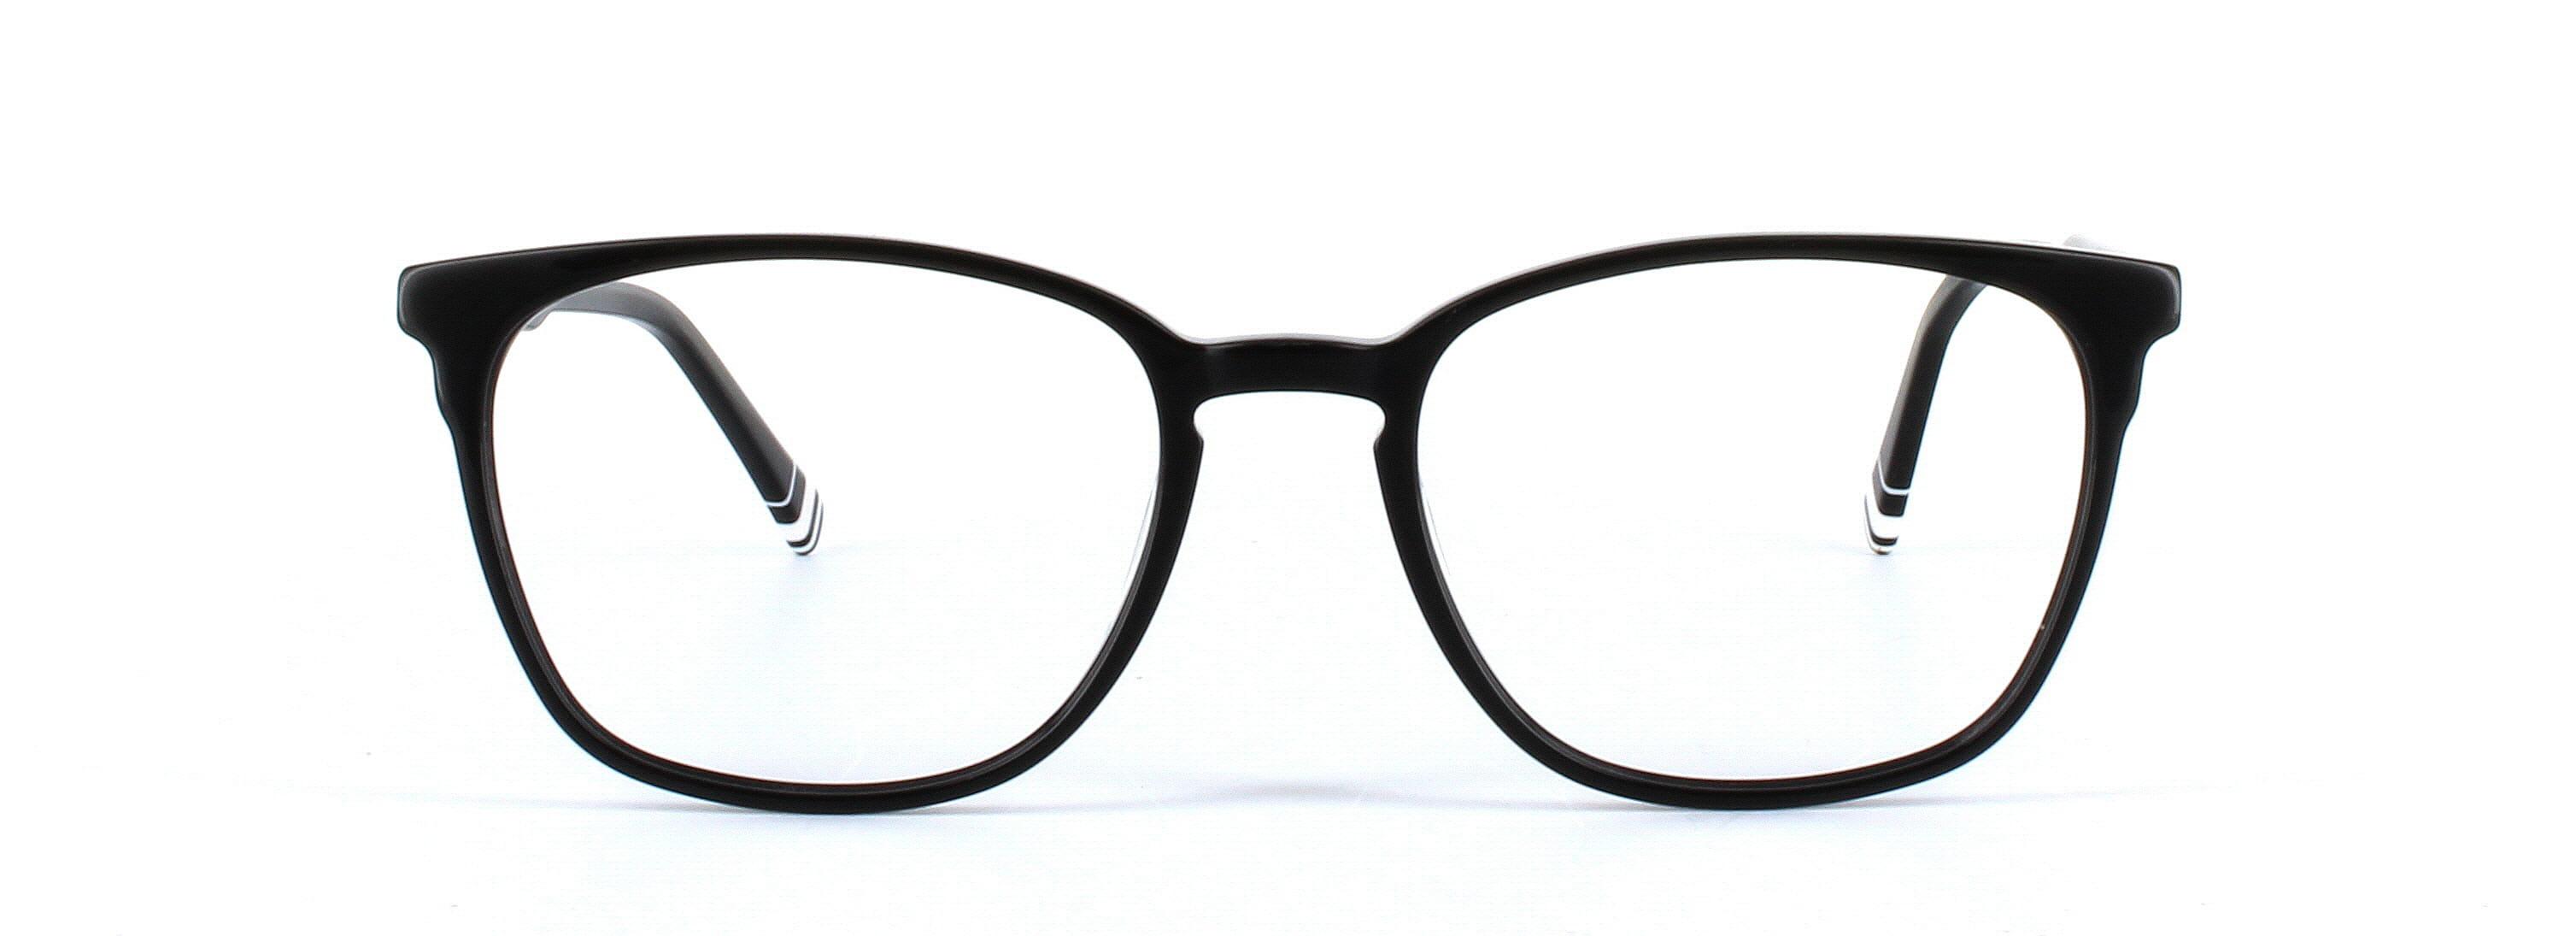 Ladies black acetate glasses - round - image 5